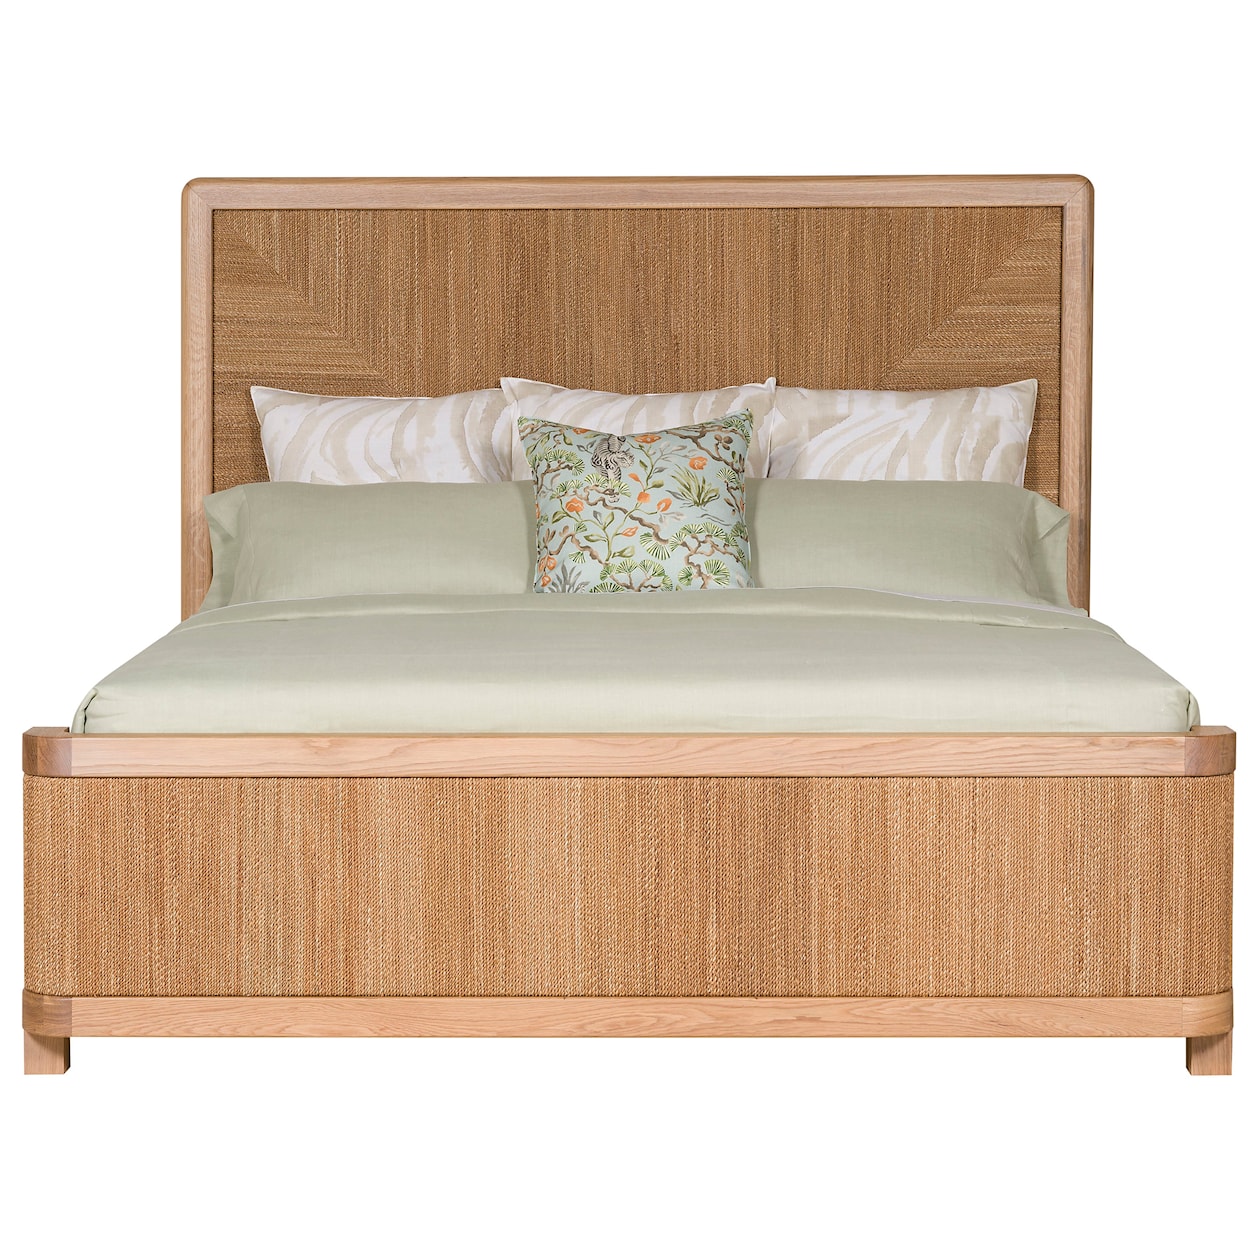 Vanguard Furniture Form Queen Panel Bed